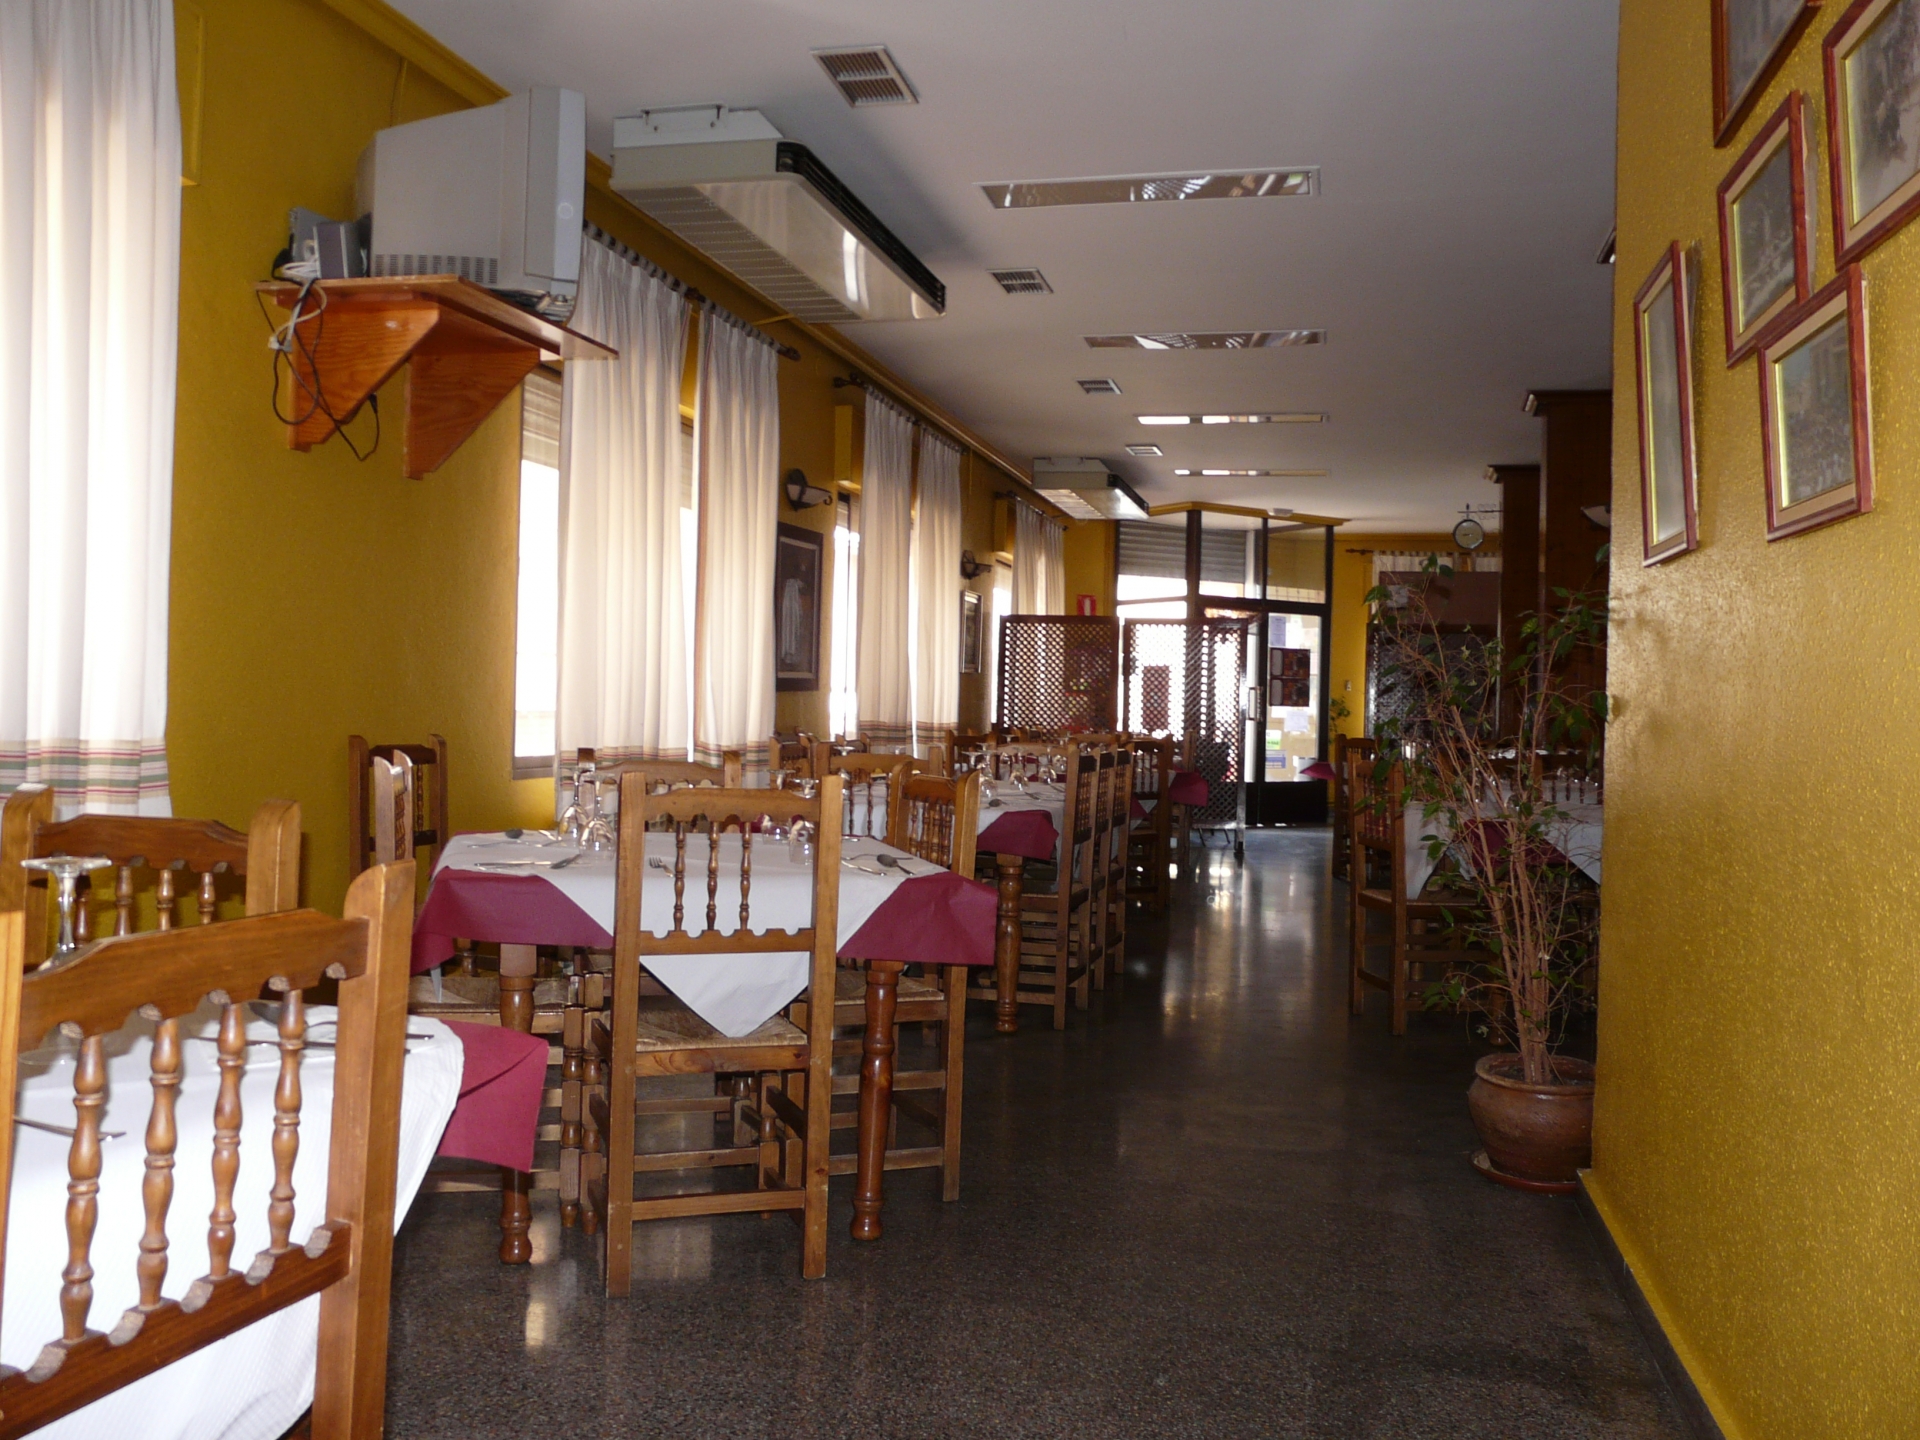 Restaurante San Juan